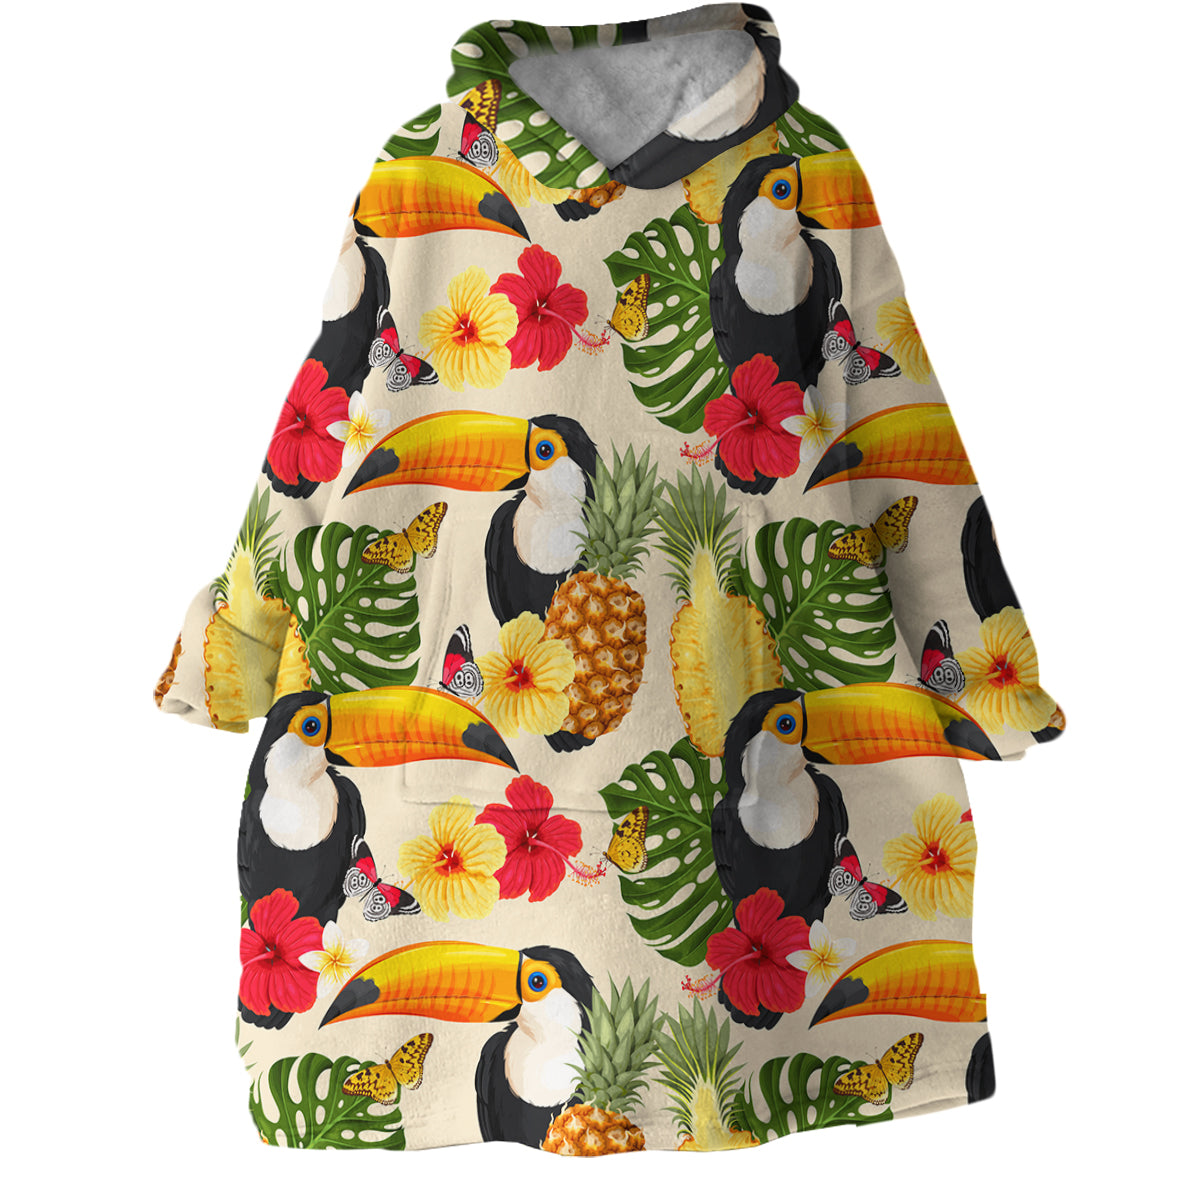 Tropical Toucan Wearable Blanket Hoodie